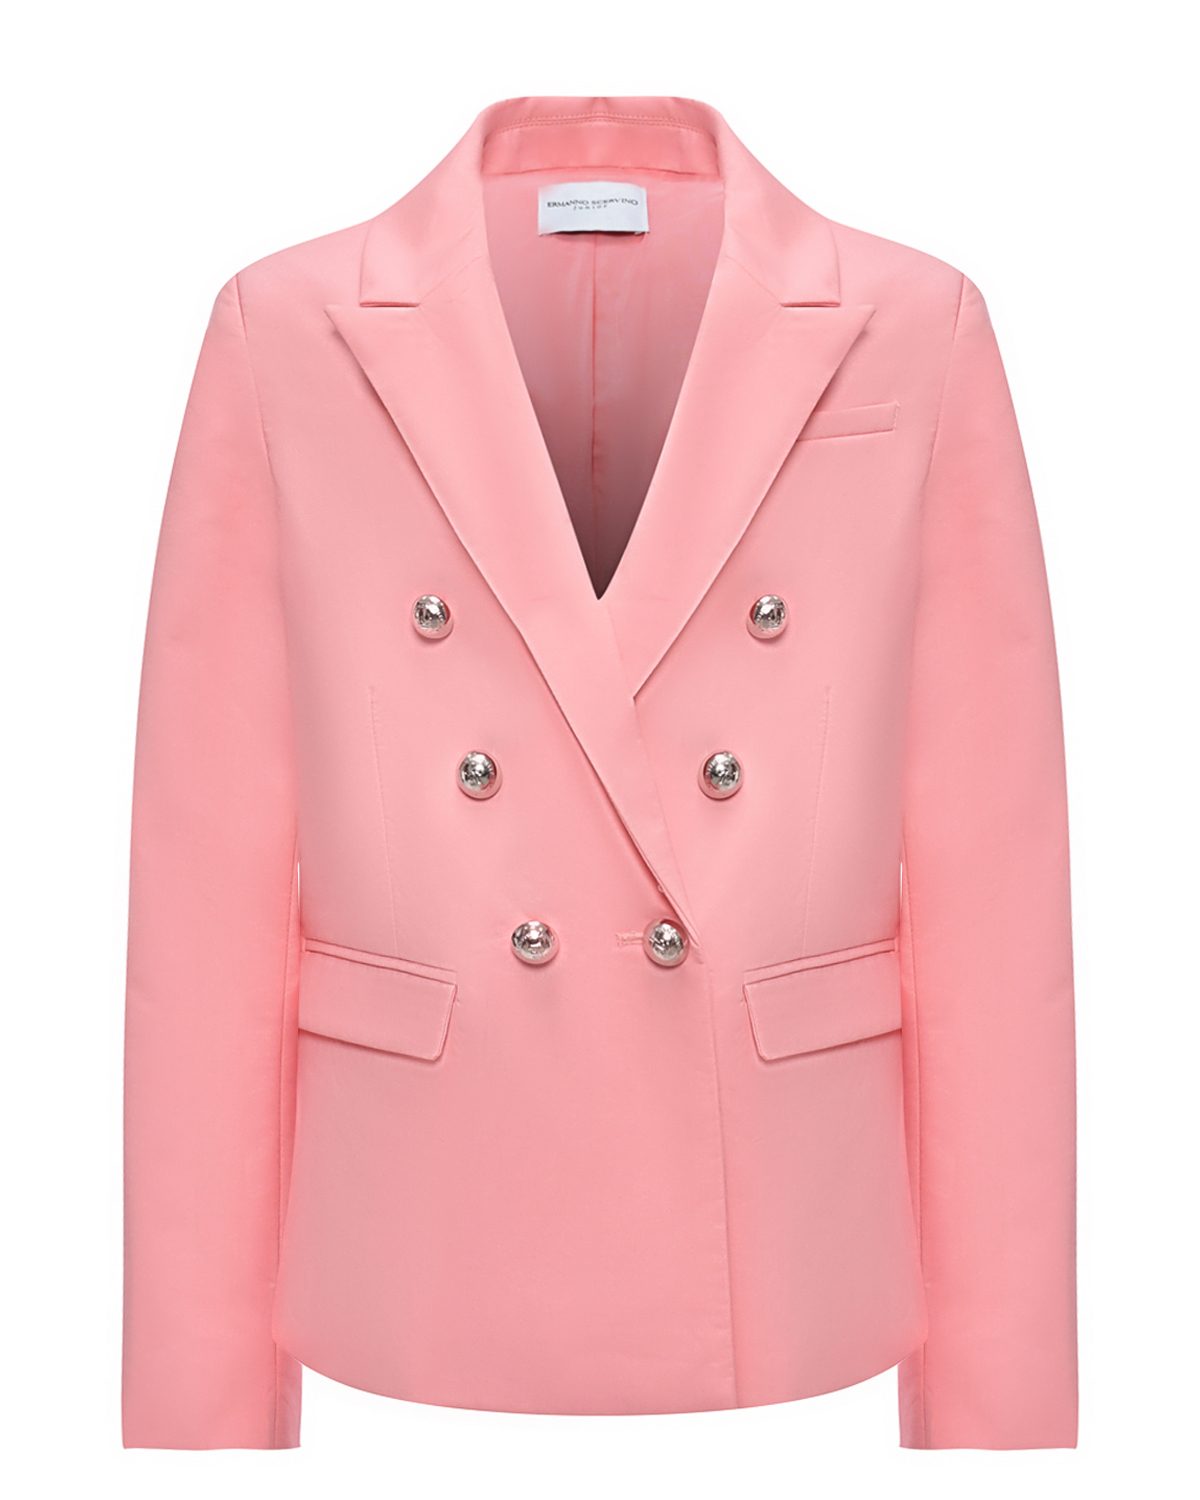 Двубортный пиджак, розовый Ermanno Scervino пиджак женский двубортный mist р 42 голубой белый